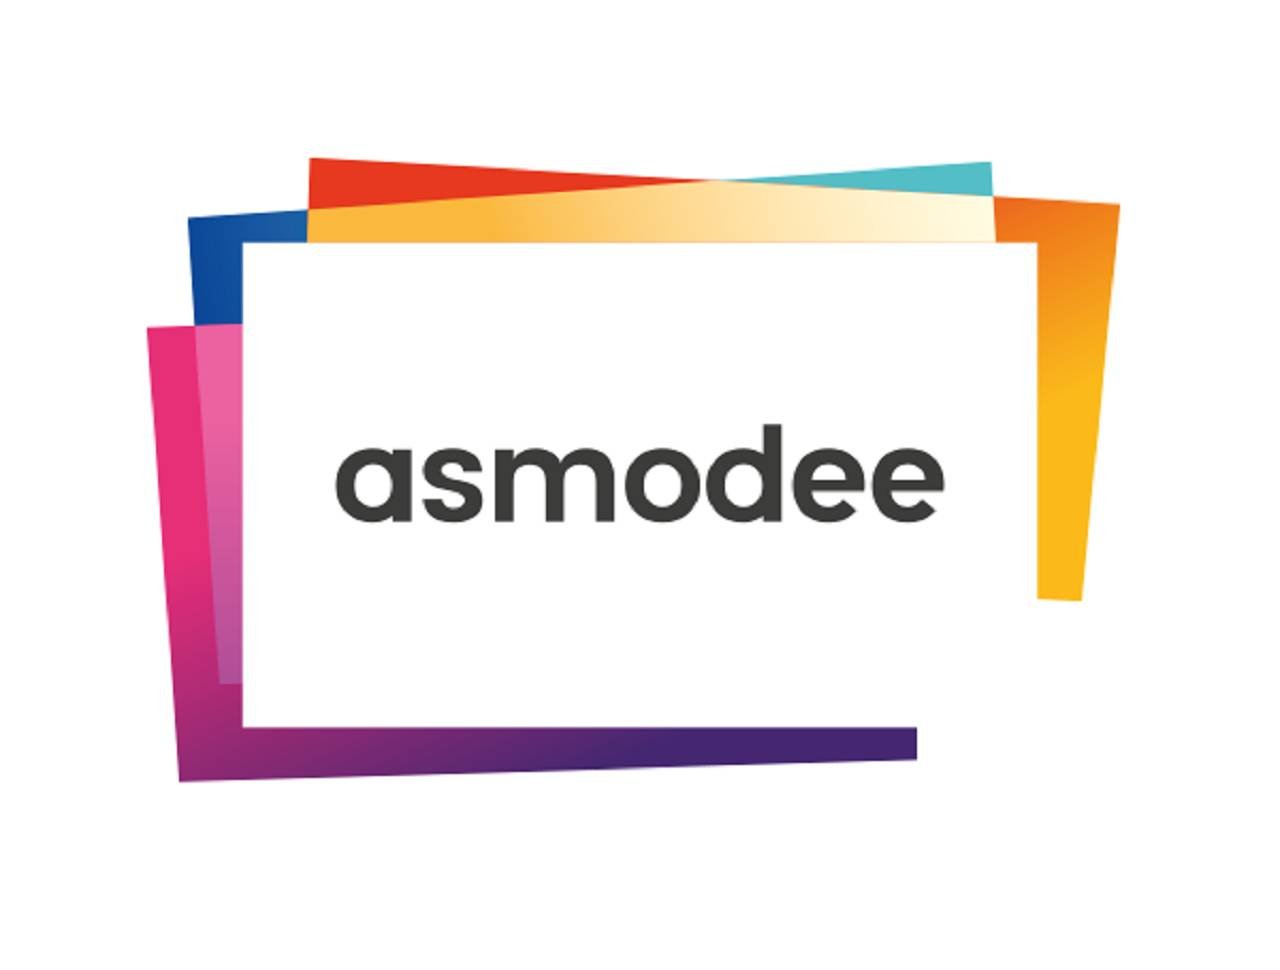 Immagine di Asmodee Group acquisisce l'editore di giochi Bezzerwizzer Nordic